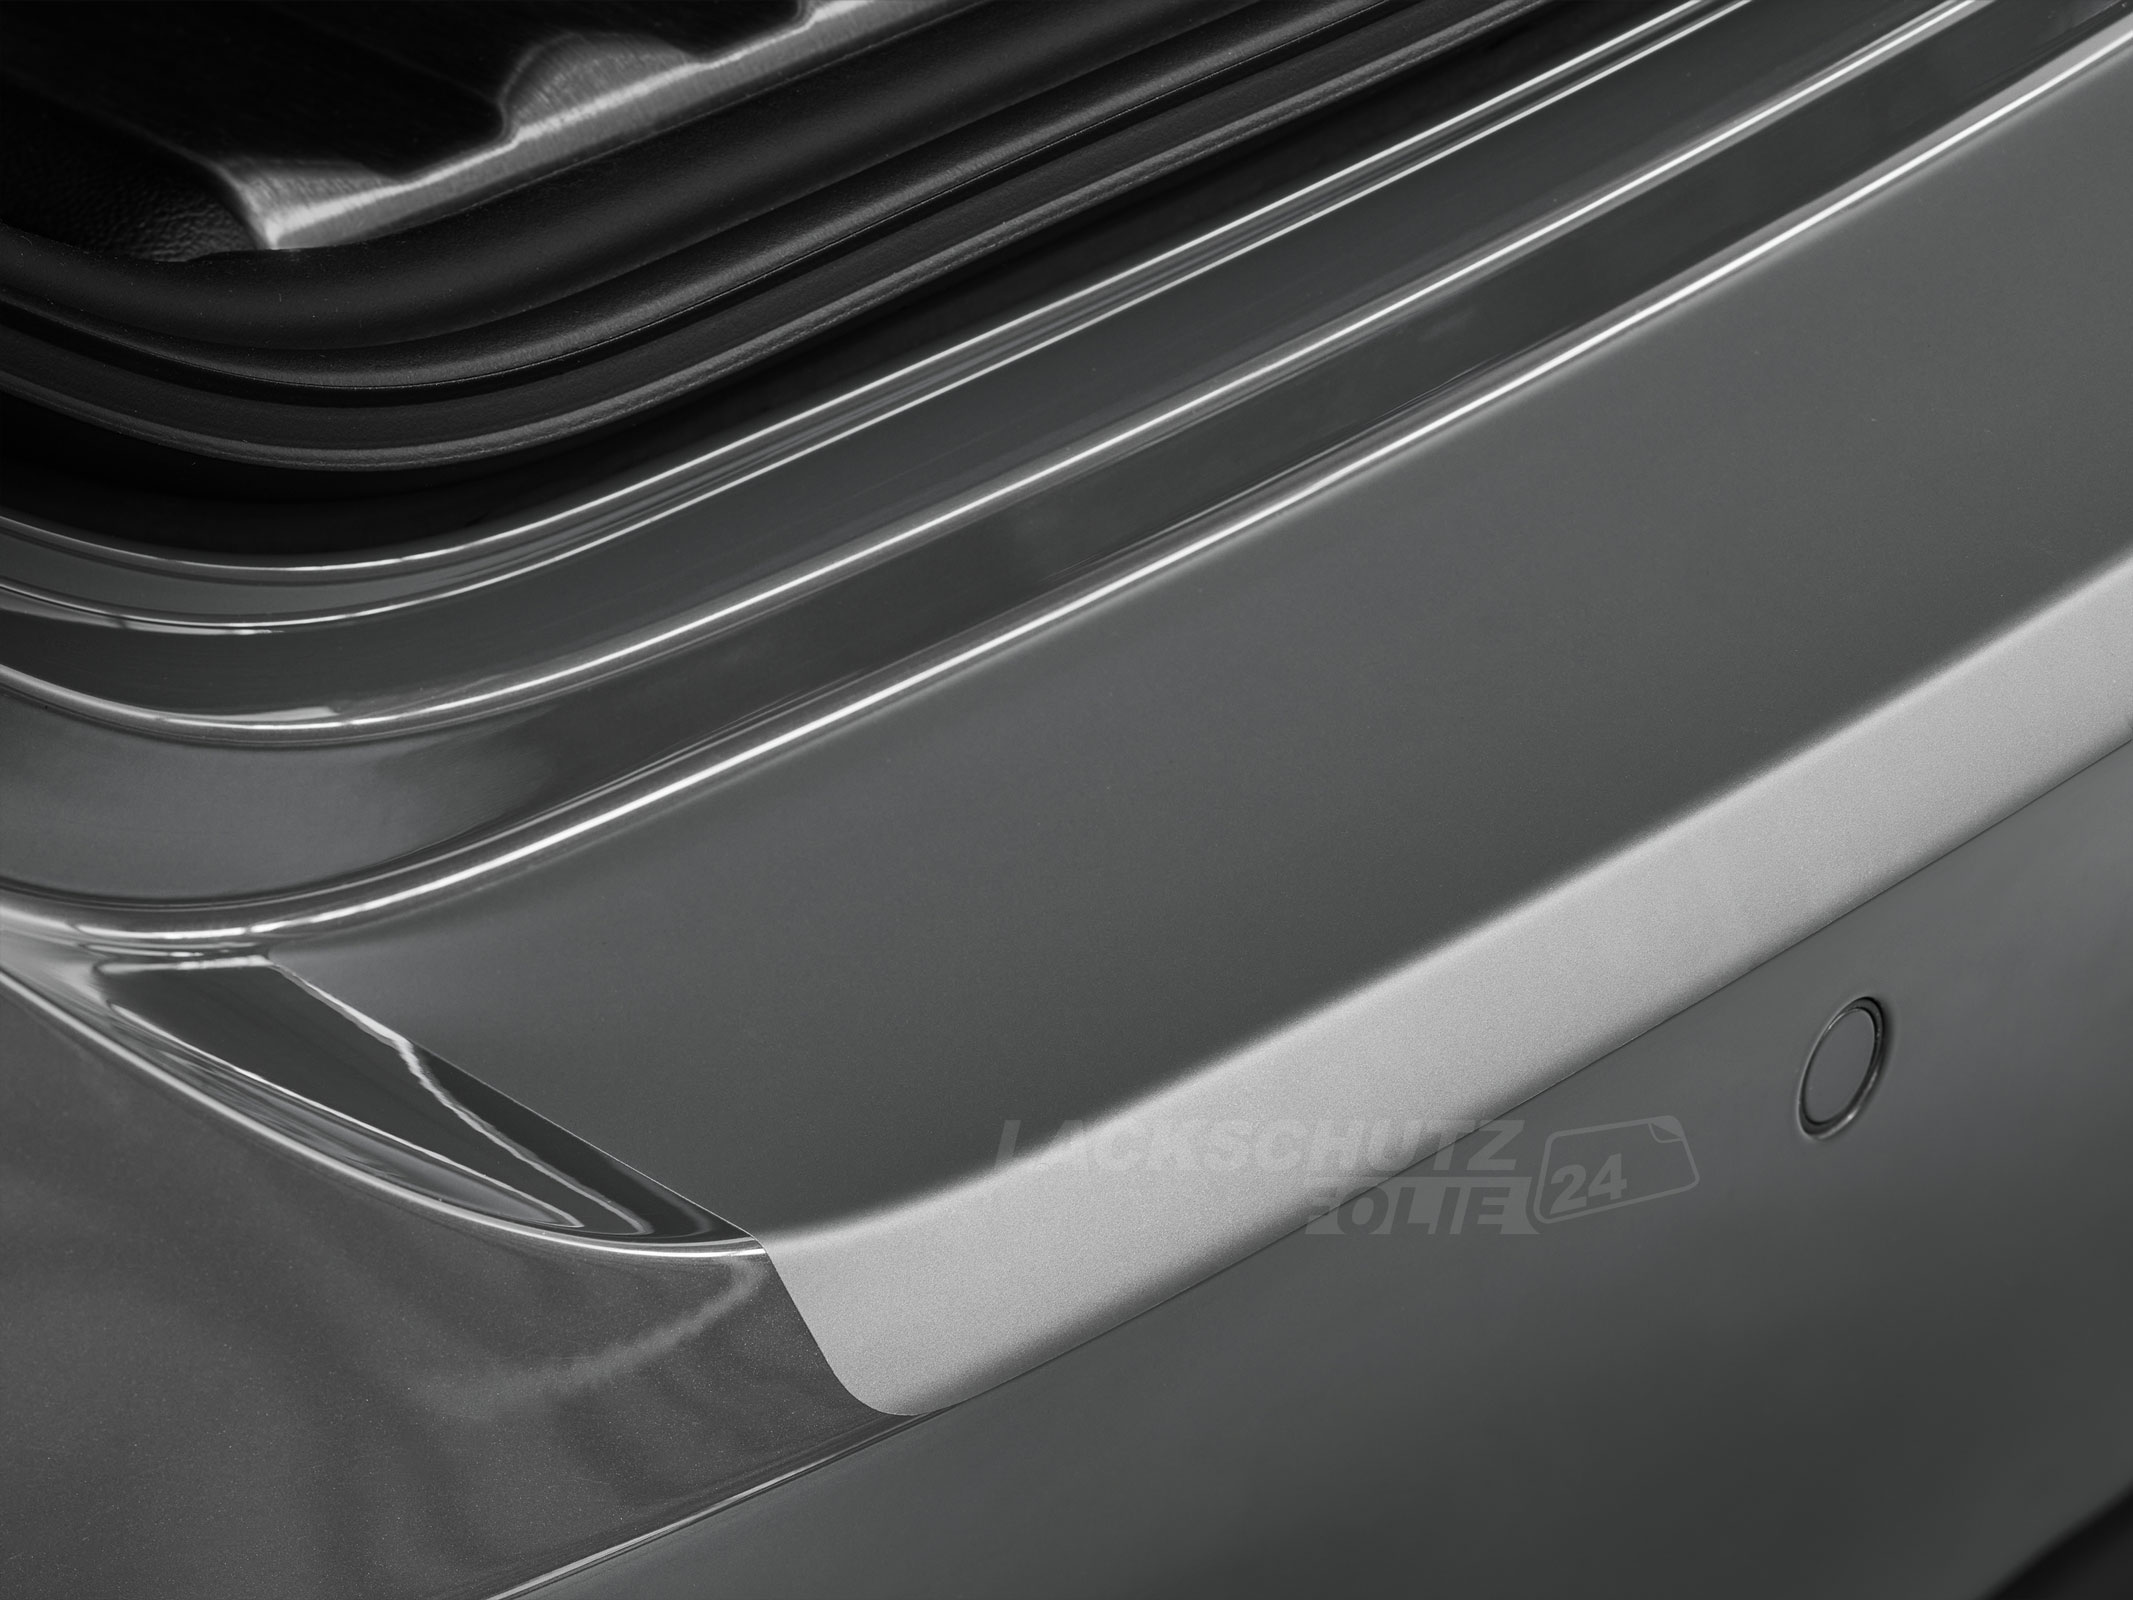 Ladekantenschutzfolie - Transparent Glatt MATT 110 µm stark  für Ford Transit Courier ab BJ 2014